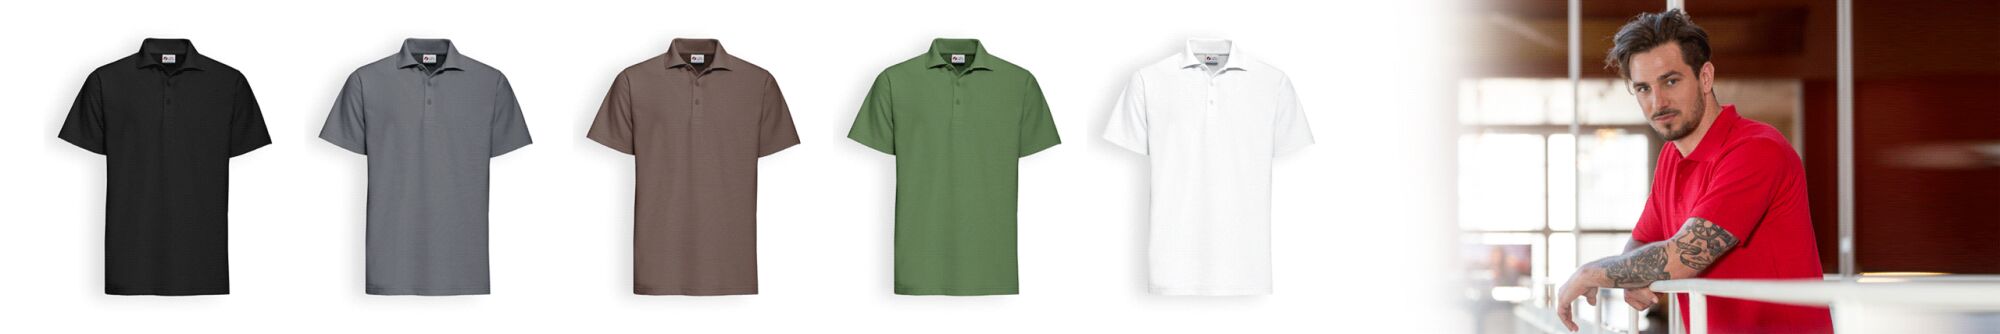 Poloshirt-Allrounder: Praktischer als Hemden, seriöser als Shirts